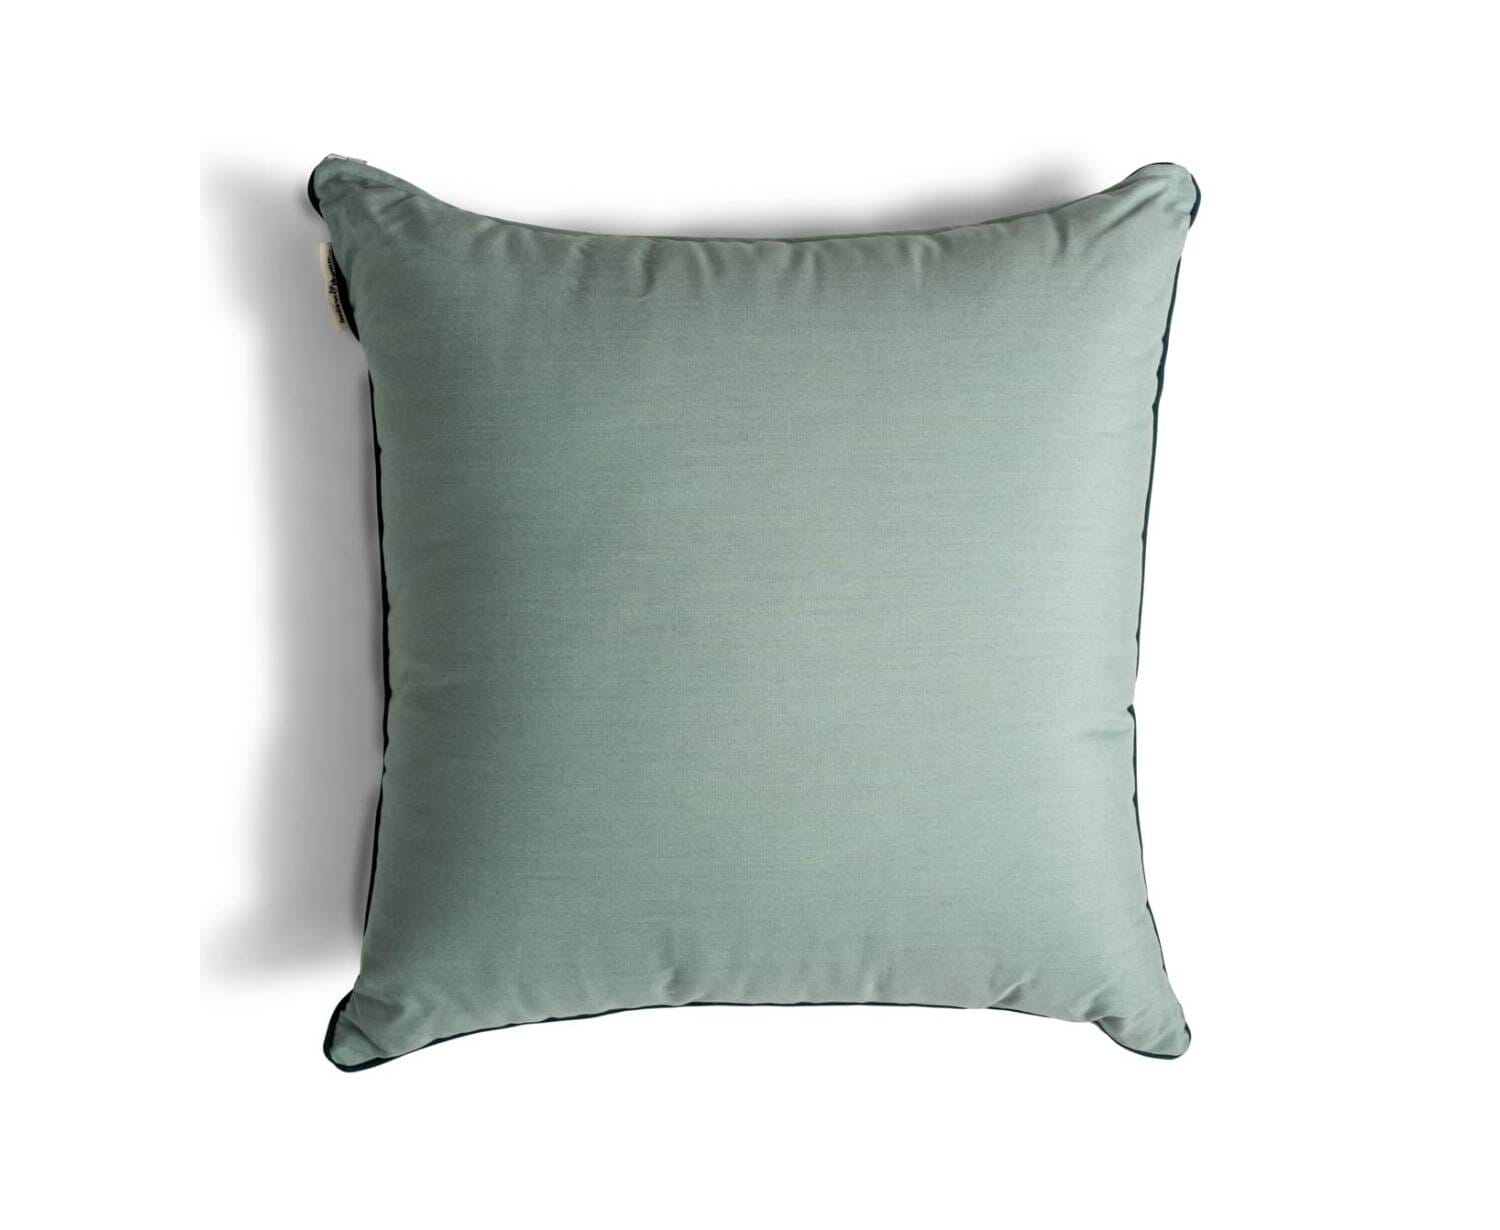 The Euro Throw Pillow - Rivie Green Euro Throw Pillow Business & Pleasure Co Aus 